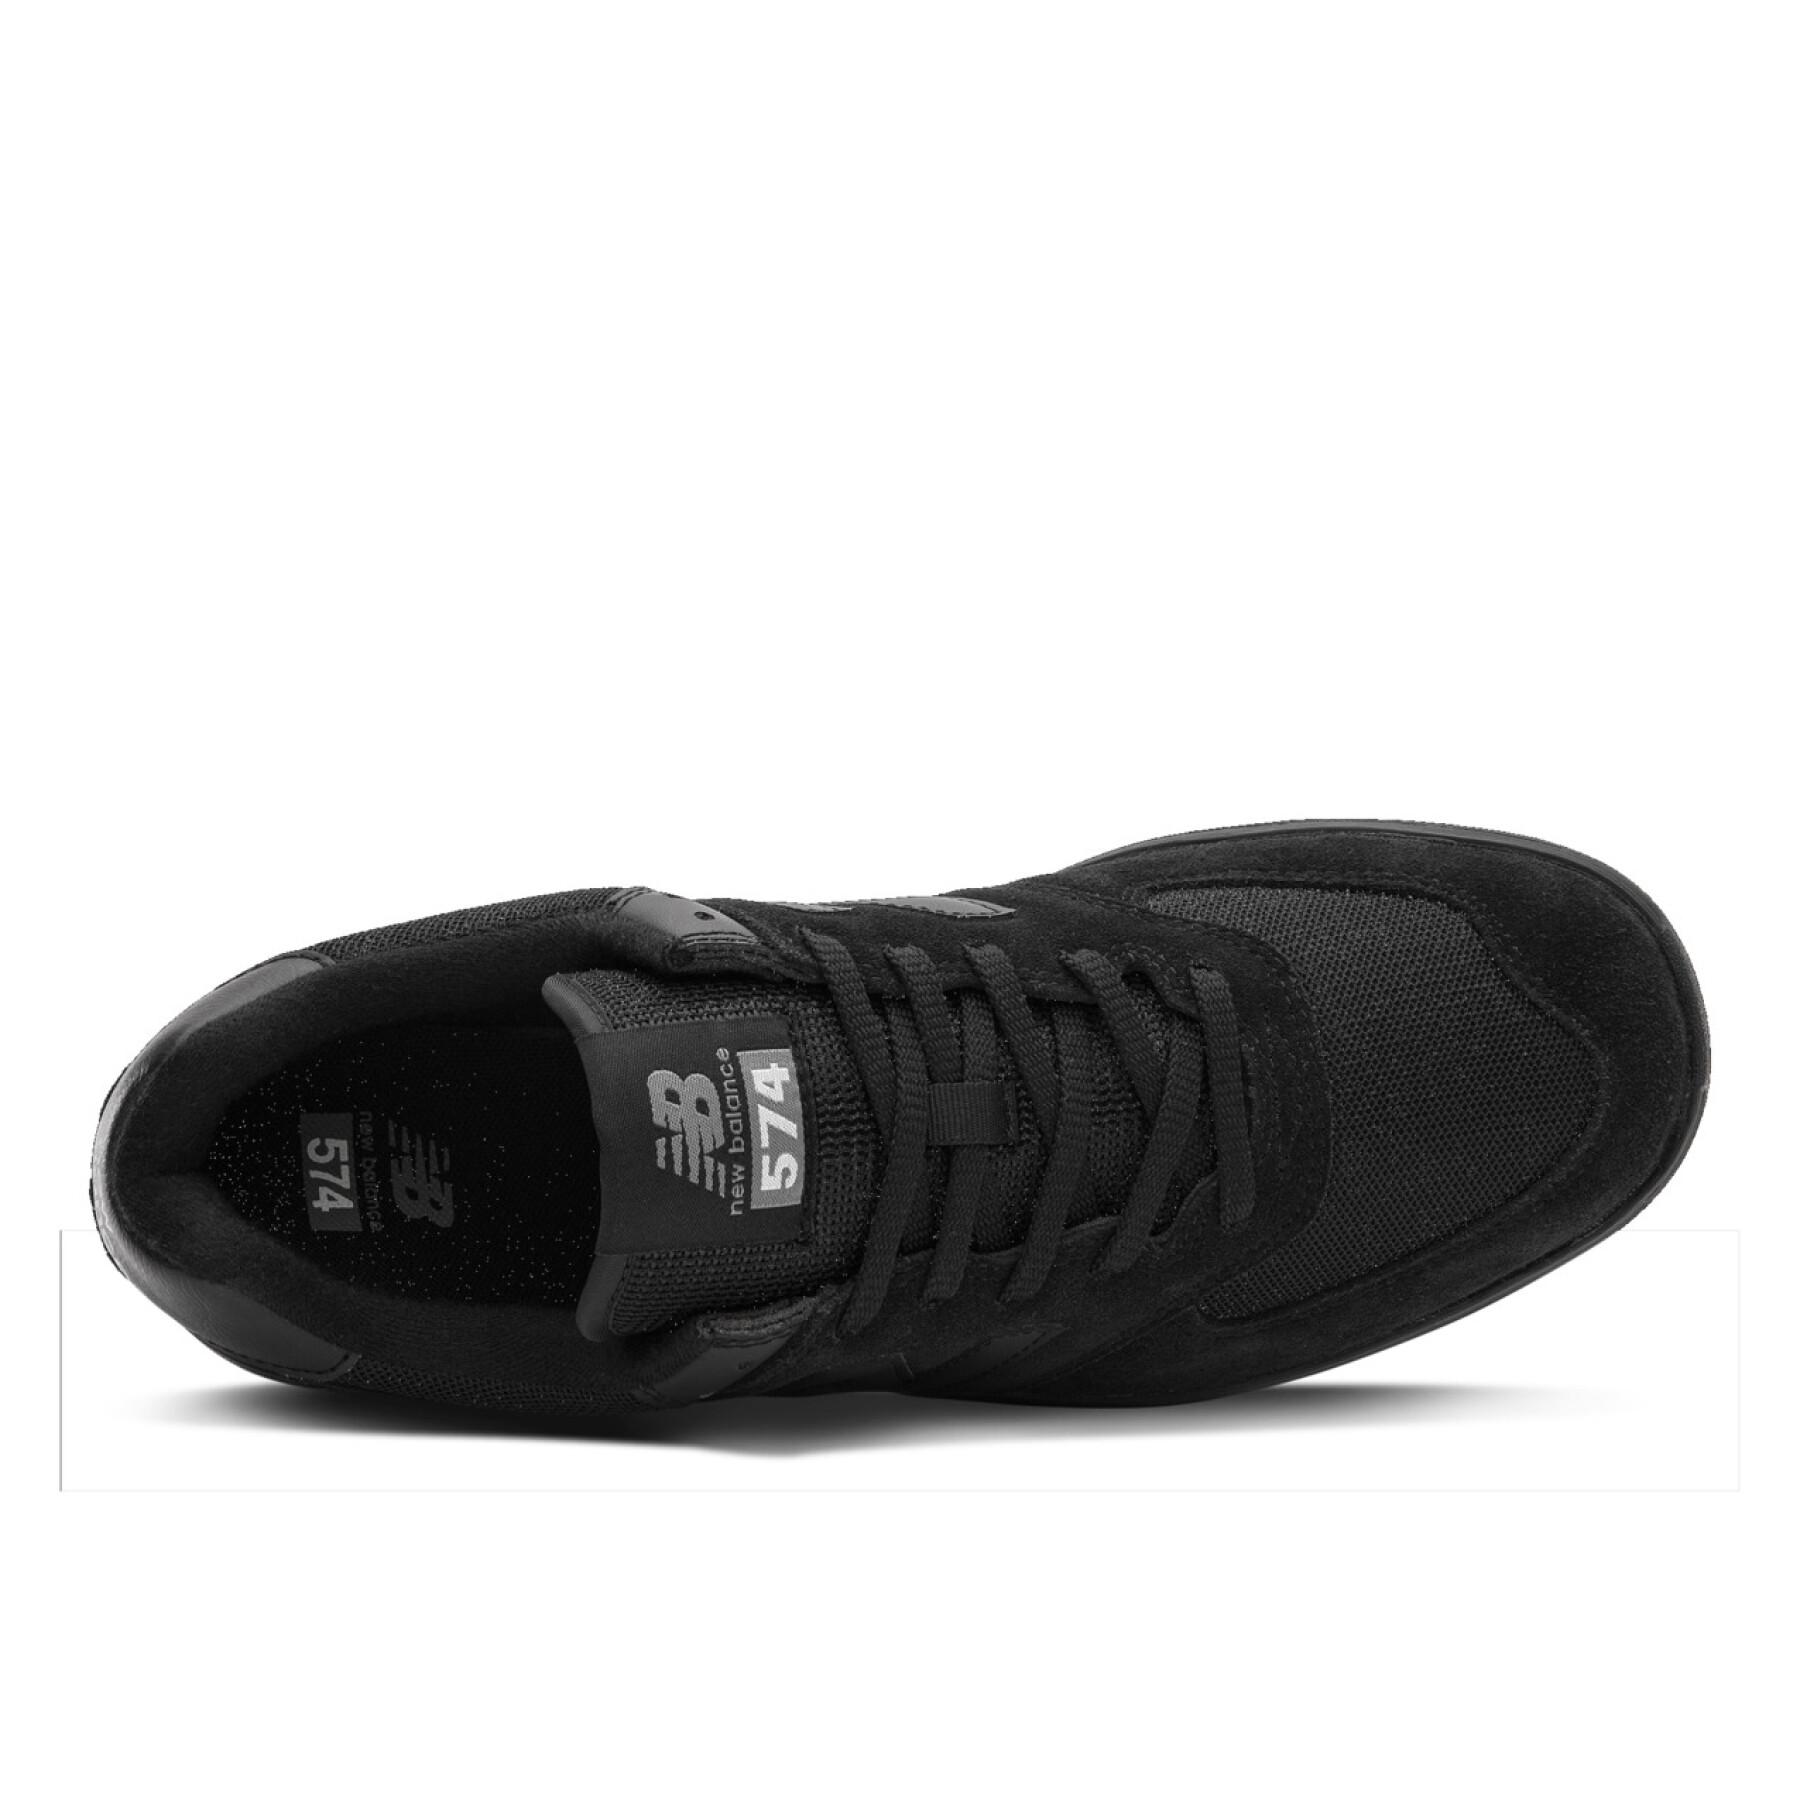 Schuhe New Balance am574